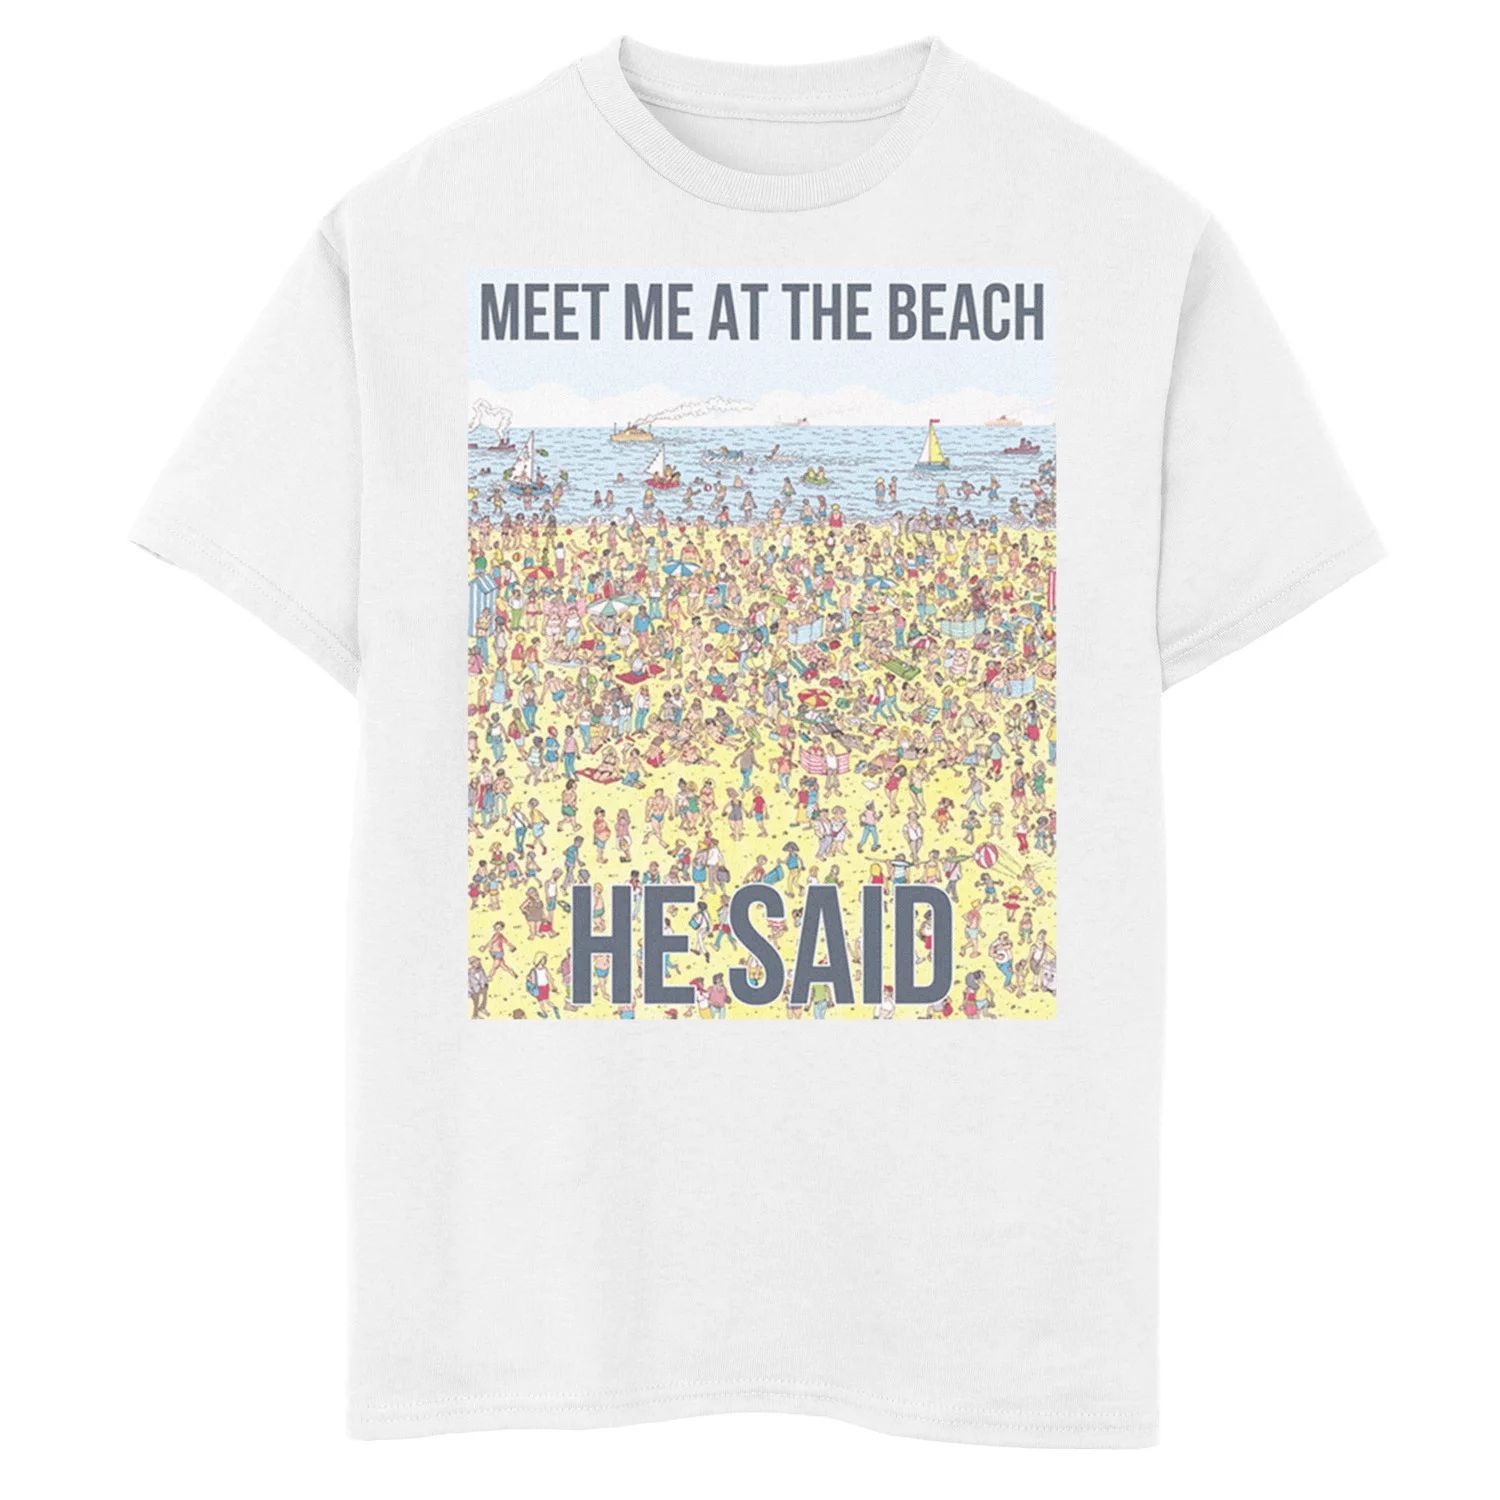 Футболка с рисунком для мальчиков 8–20 лет, где Уолдо встретит меня на пляже, он сказал Licensed Character, белый